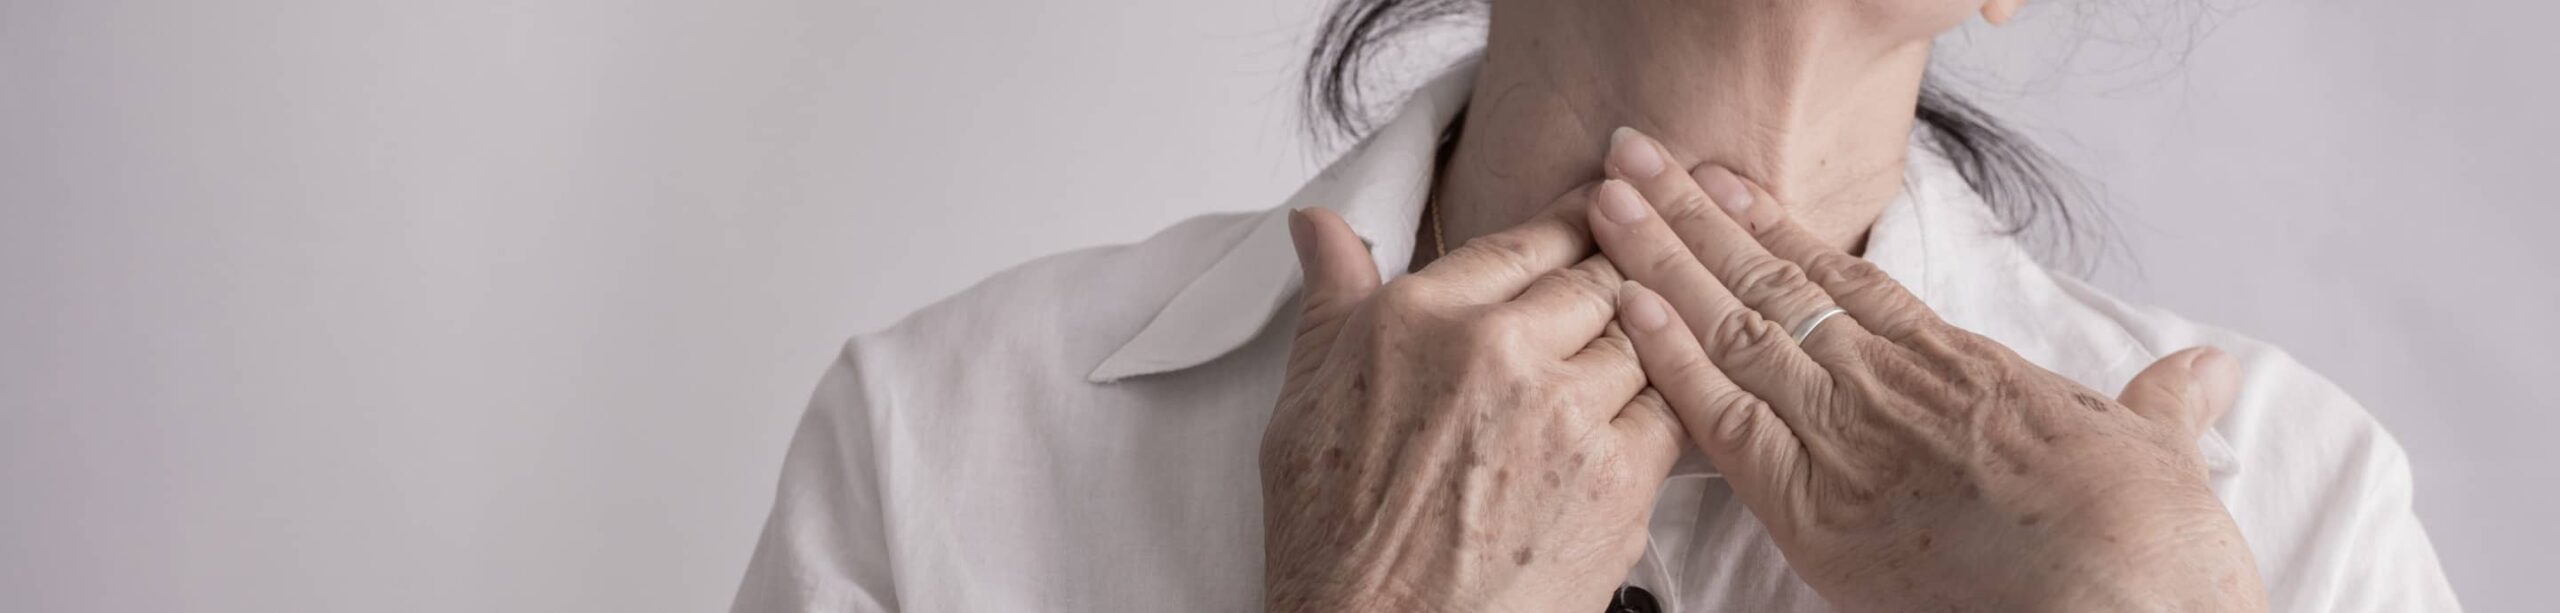 Quelle prise en charge pour les patients souffrant de troubles de la déglutition ? | Clinalliance | SMR